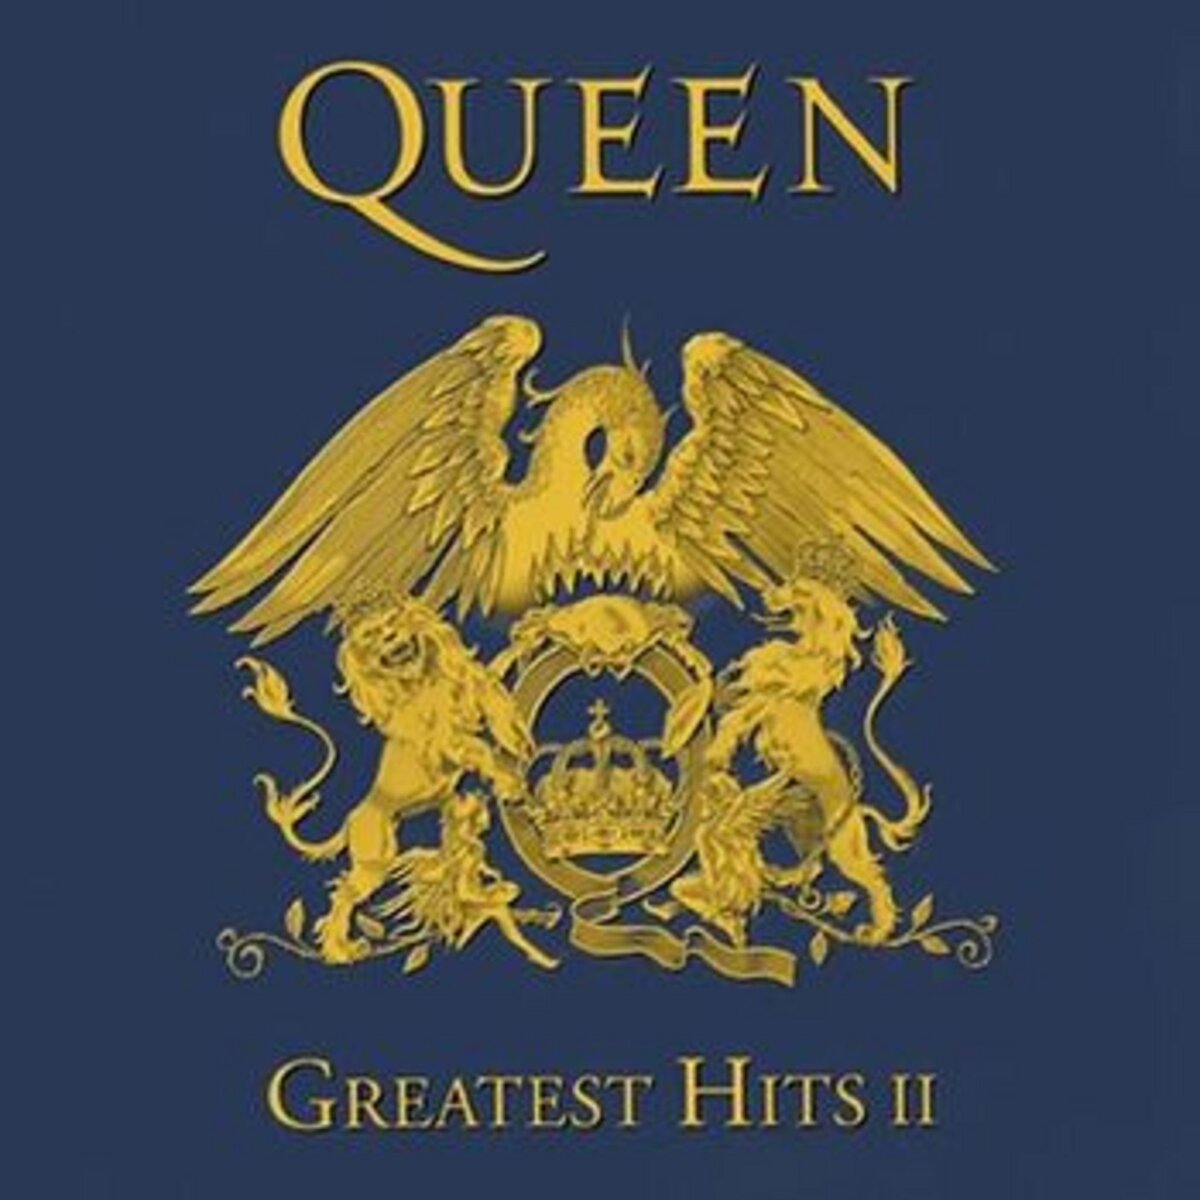 Greatest Hits Vol 2 - Queen 2LP